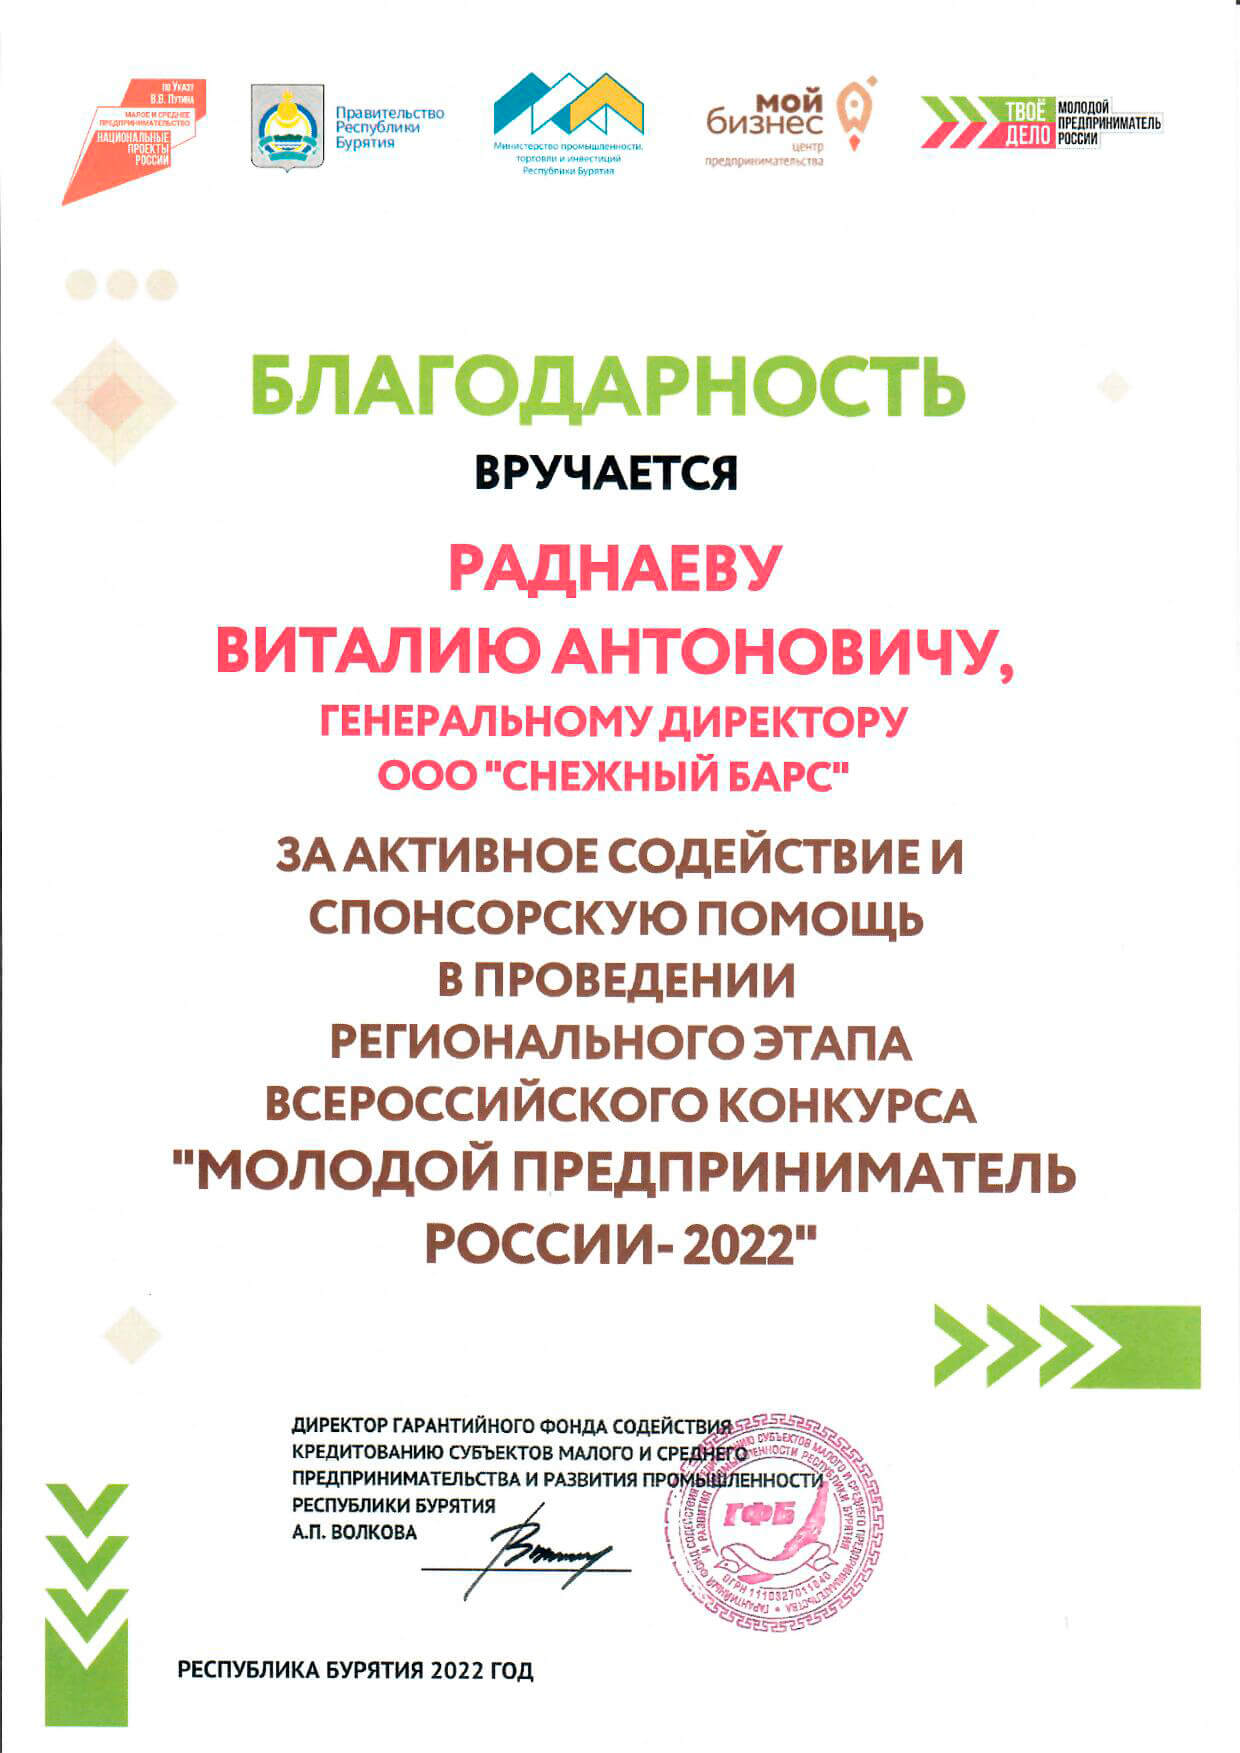 Благодарность за активное содействие и спонсорскую помощь «Молодой предприниматель России - 2022»